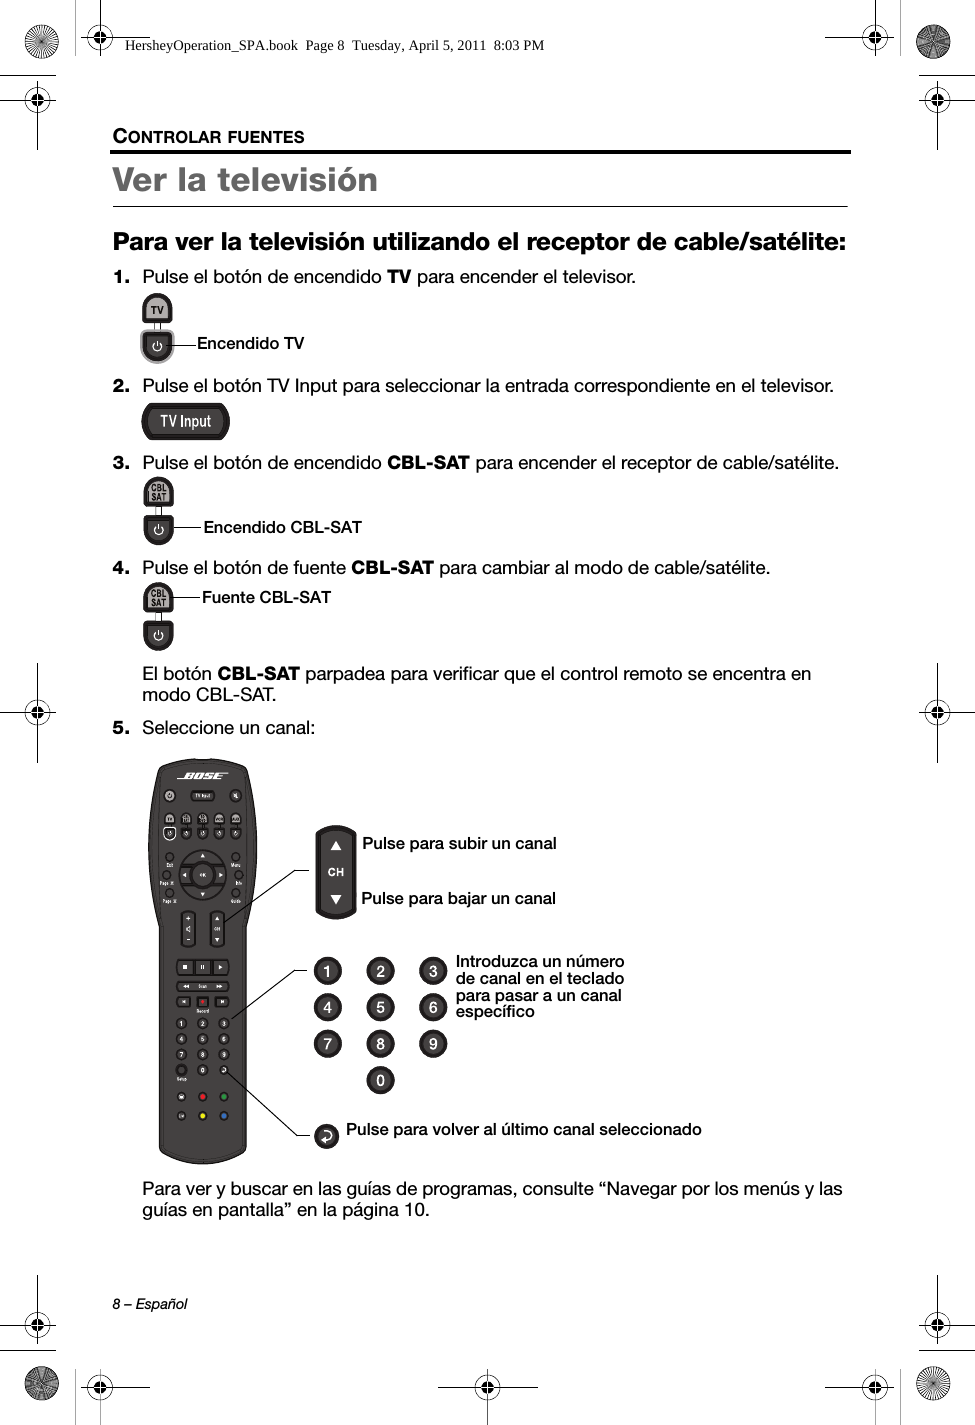 8 – EspañolCONTROLAR FUENTESVer la televisión Para ver la televisión utilizando el receptor de cable/satélite:1. Pulse el botón de encendido TV para encender el televisor.2. Pulse el botón TV Input para seleccionar la entrada correspondiente en el televisor.3. Pulse el botón de encendido CBL-SAT para encender el receptor de cable/satélite.4. Pulse el botón de fuente CBL-SAT para cambiar al modo de cable/satélite.El botón CBL-SAT parpadea para verificar que el control remoto se encentra en modo CBL-SAT.5. Seleccione un canal:Para ver y buscar en las guías de programas, consulte “Navegar por los menús y las guías en pantalla” en la página 10.Encendido TVEncendido CBL-SATFuente CBL-SATPulse para volver al último canal seleccionadoIntroduzca un número de canal en el teclado para pasar a un canal específicoPulse para bajar un canalPulse para subir un canalHersheyOperation_SPA.book  Page 8  Tuesday, April 5, 2011  8:03 PM